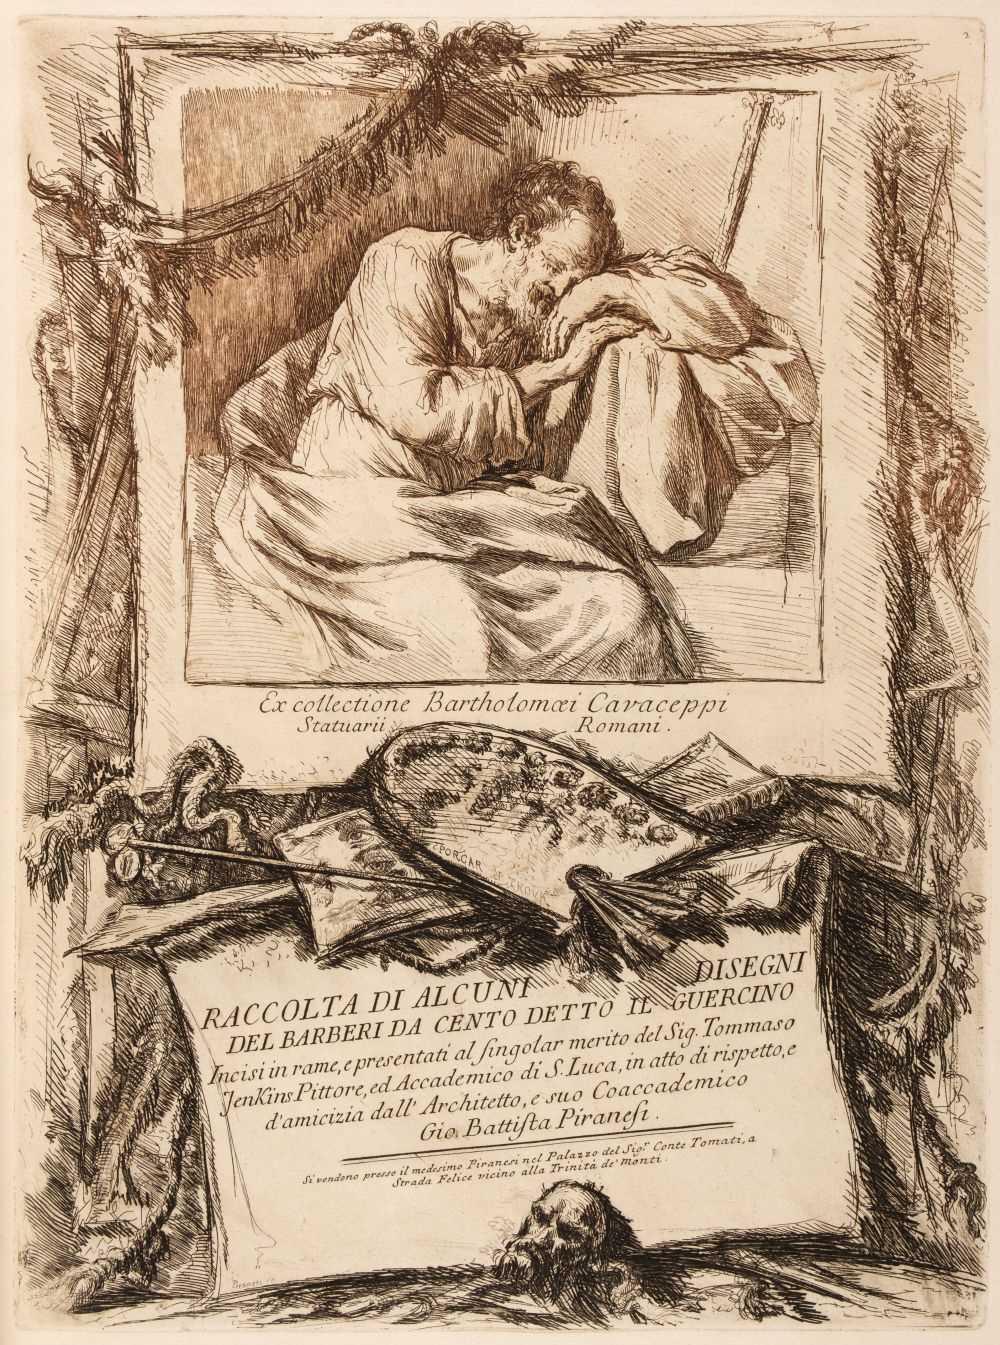 Lot 46 - Guercino (Giovanni Francesco, 1591-1666). Racolta di alcuni disegni, 1764